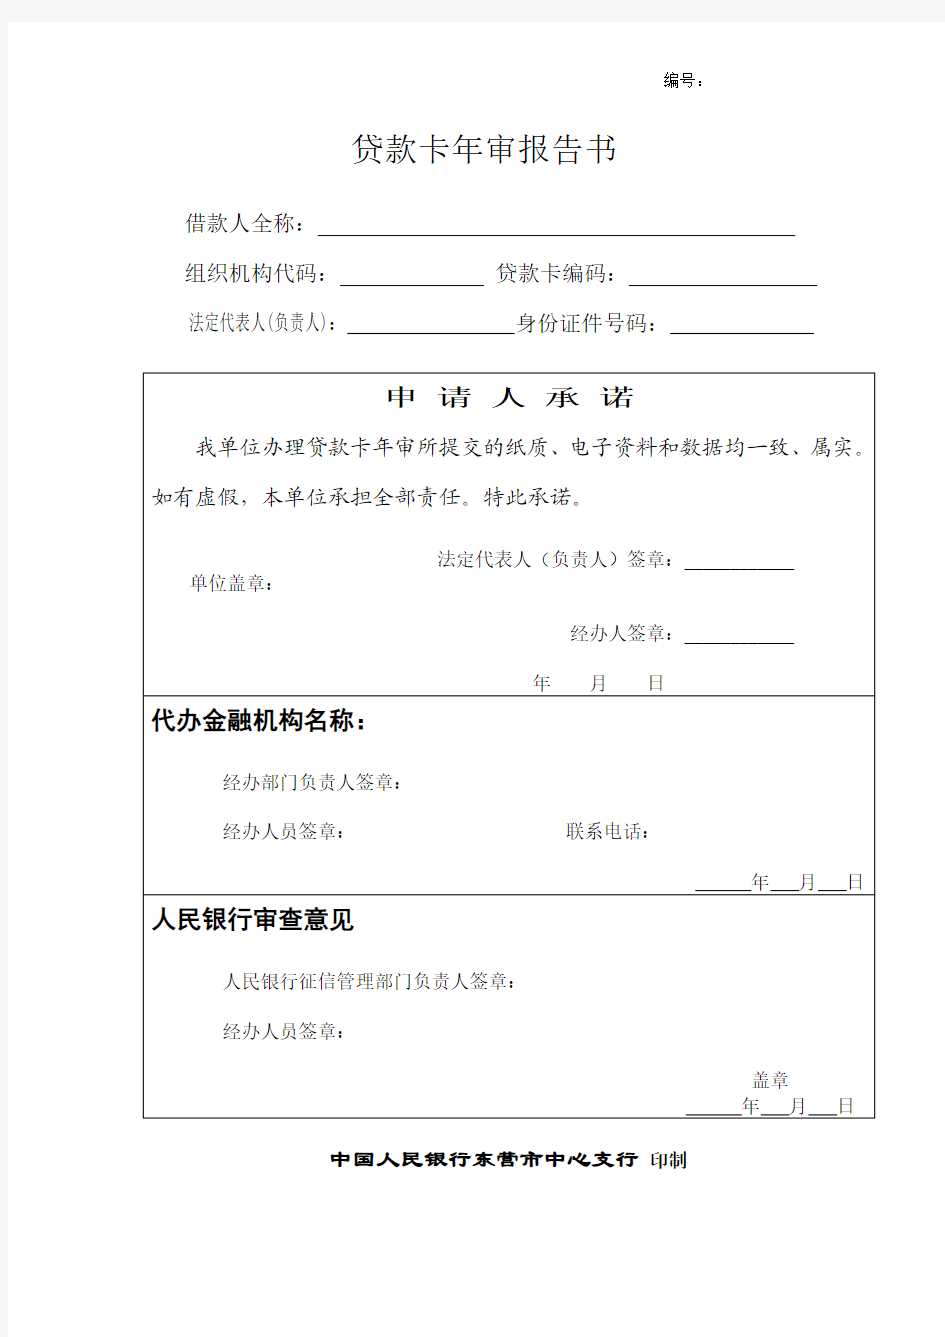 东营-贷款卡年审报告书(201301)1